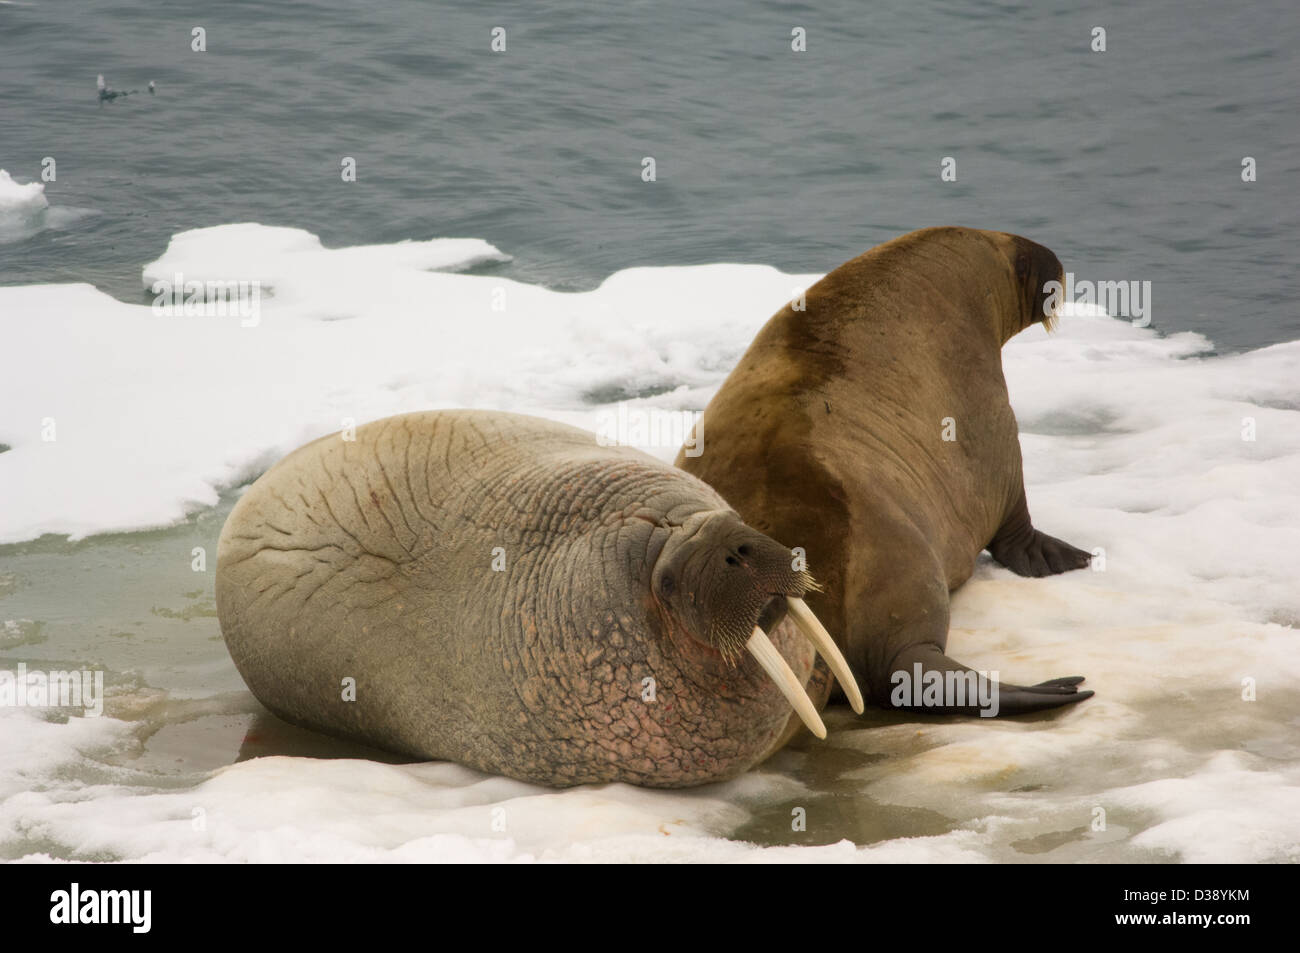 Walrus (Odobenus rosmarus) on floating ice floe, near Kapp Lee, Edgeøya Island, Svalbard Archipelago, Norway Stock Photo